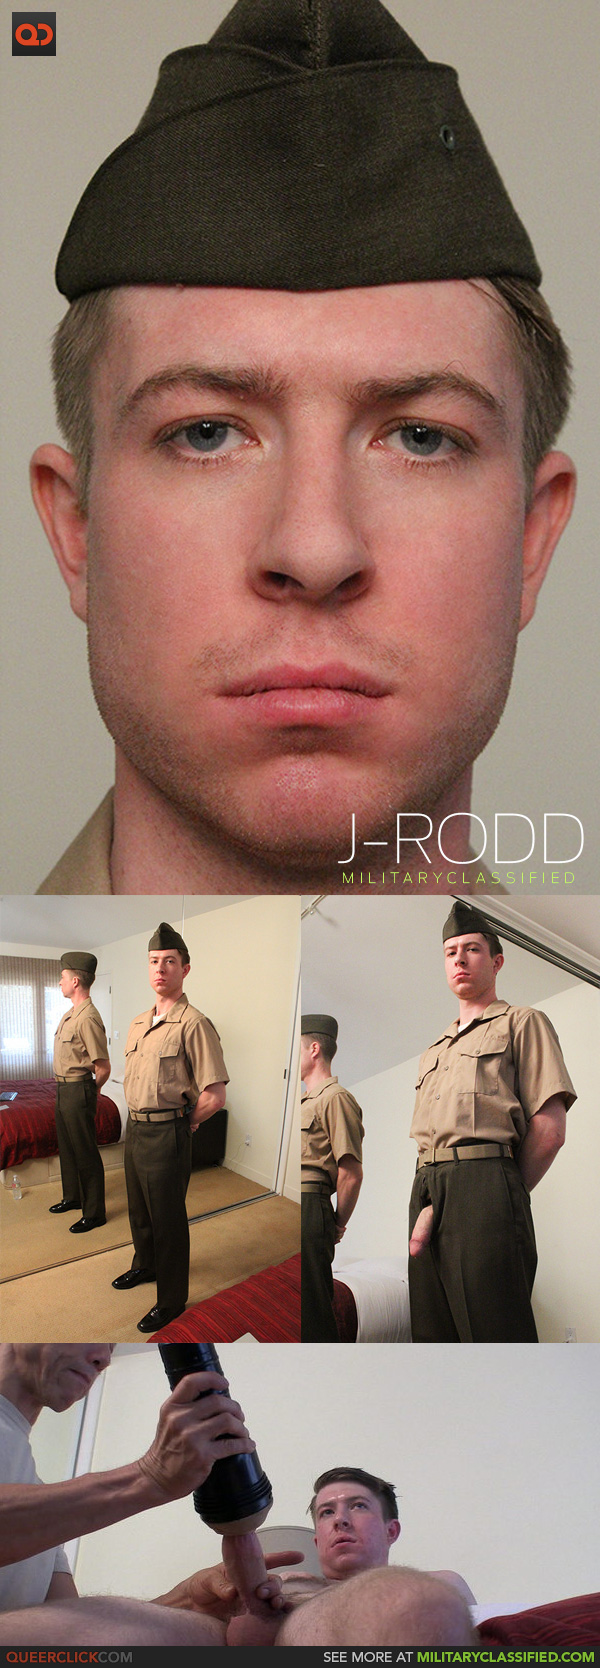 Military Classified: J-Rodd